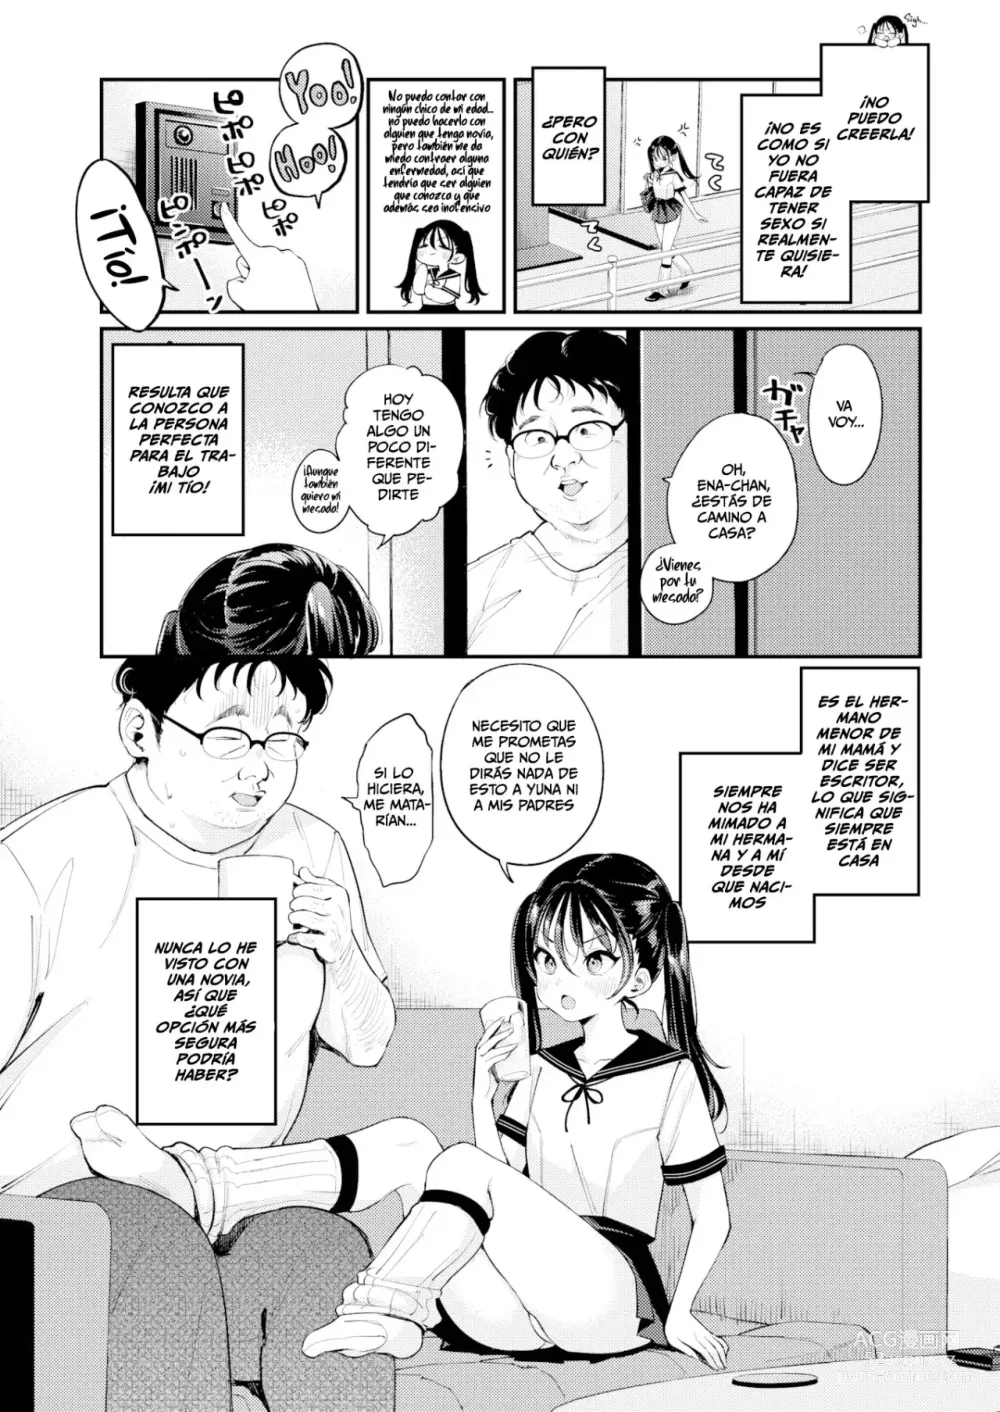 Page 3 of manga Competencia de Sobrinas